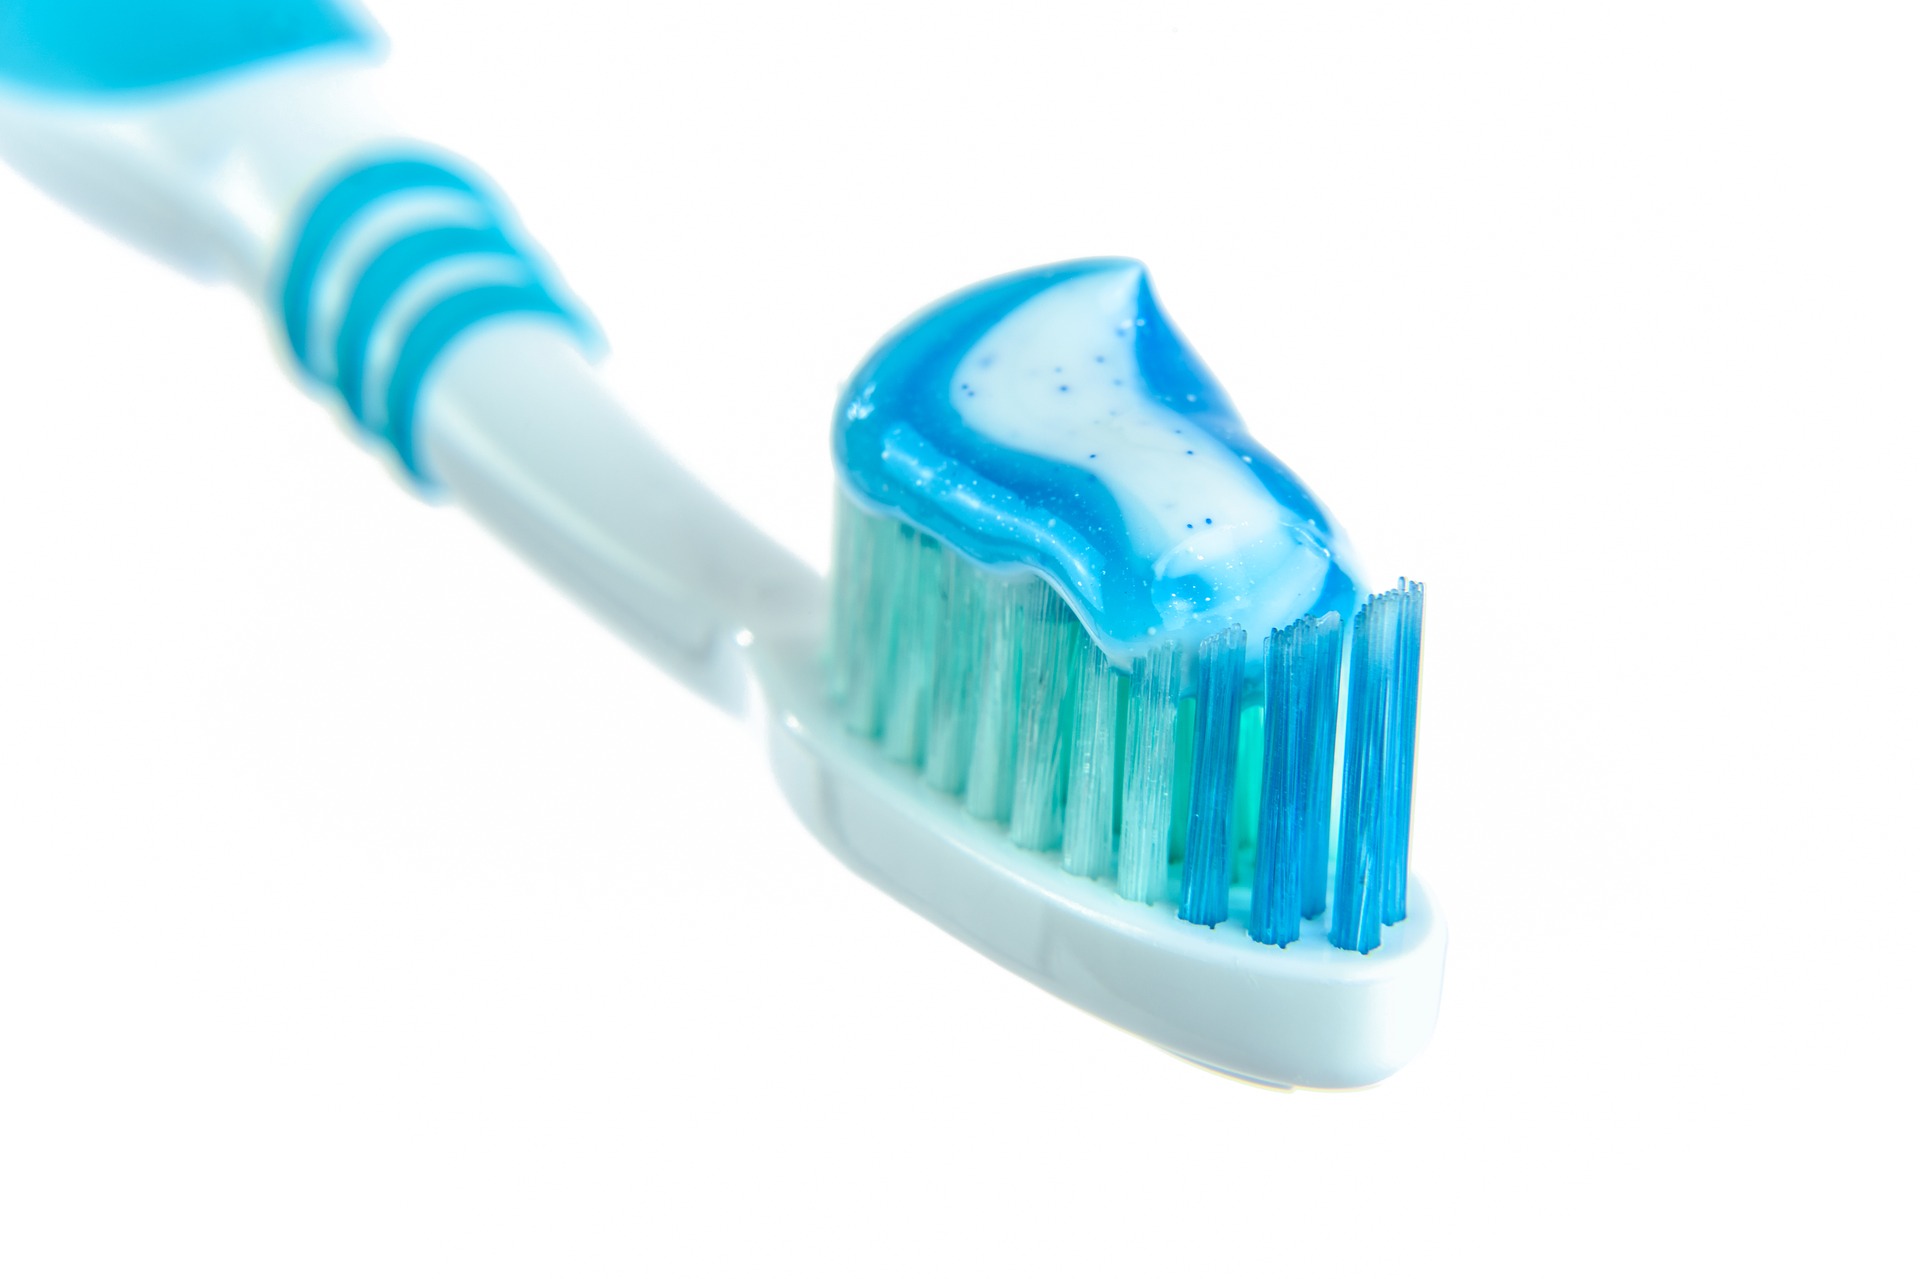 Utilidades da pasta de dente, Foto: Pixabay.